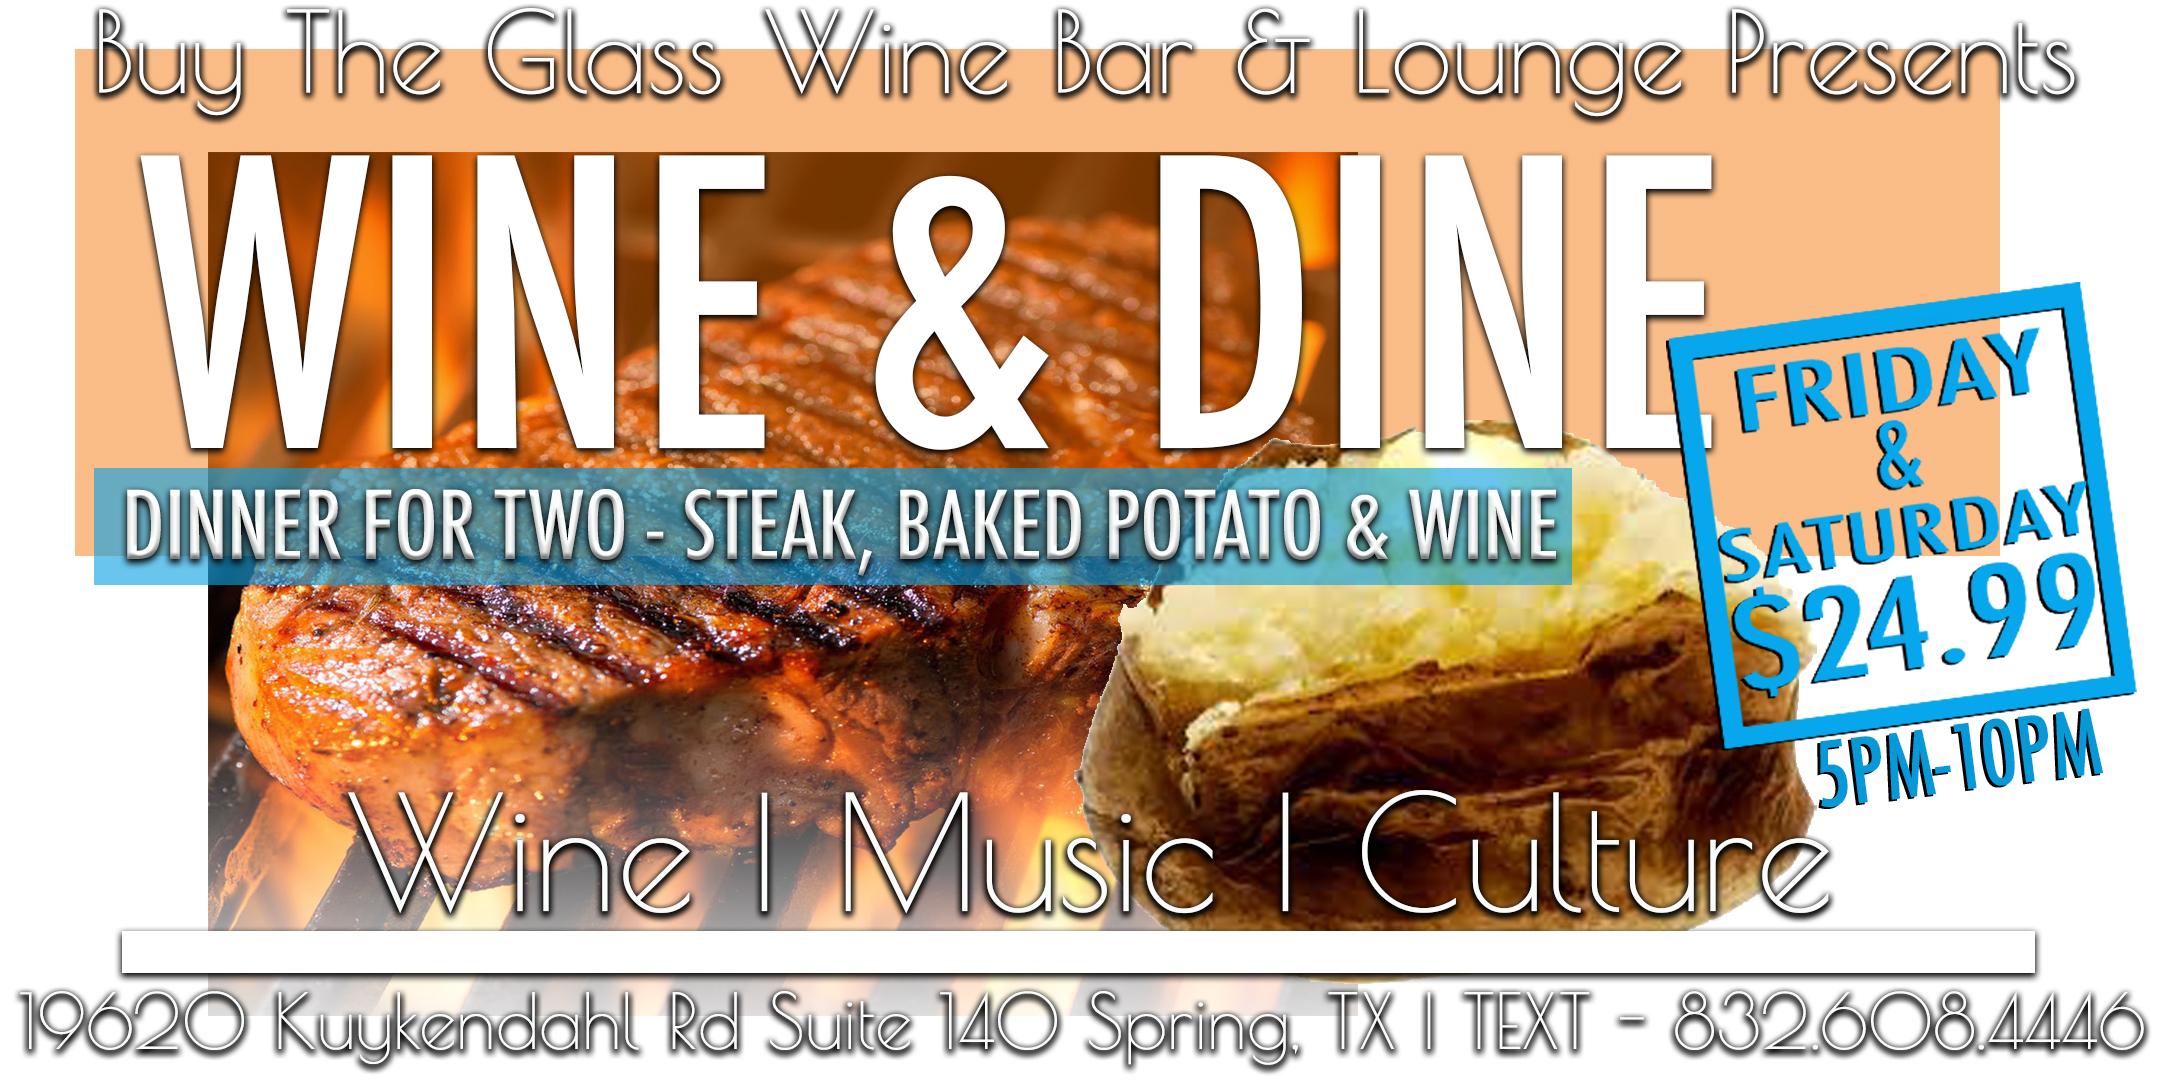 Wine & Dine | Steak Dinner for Two $24.99